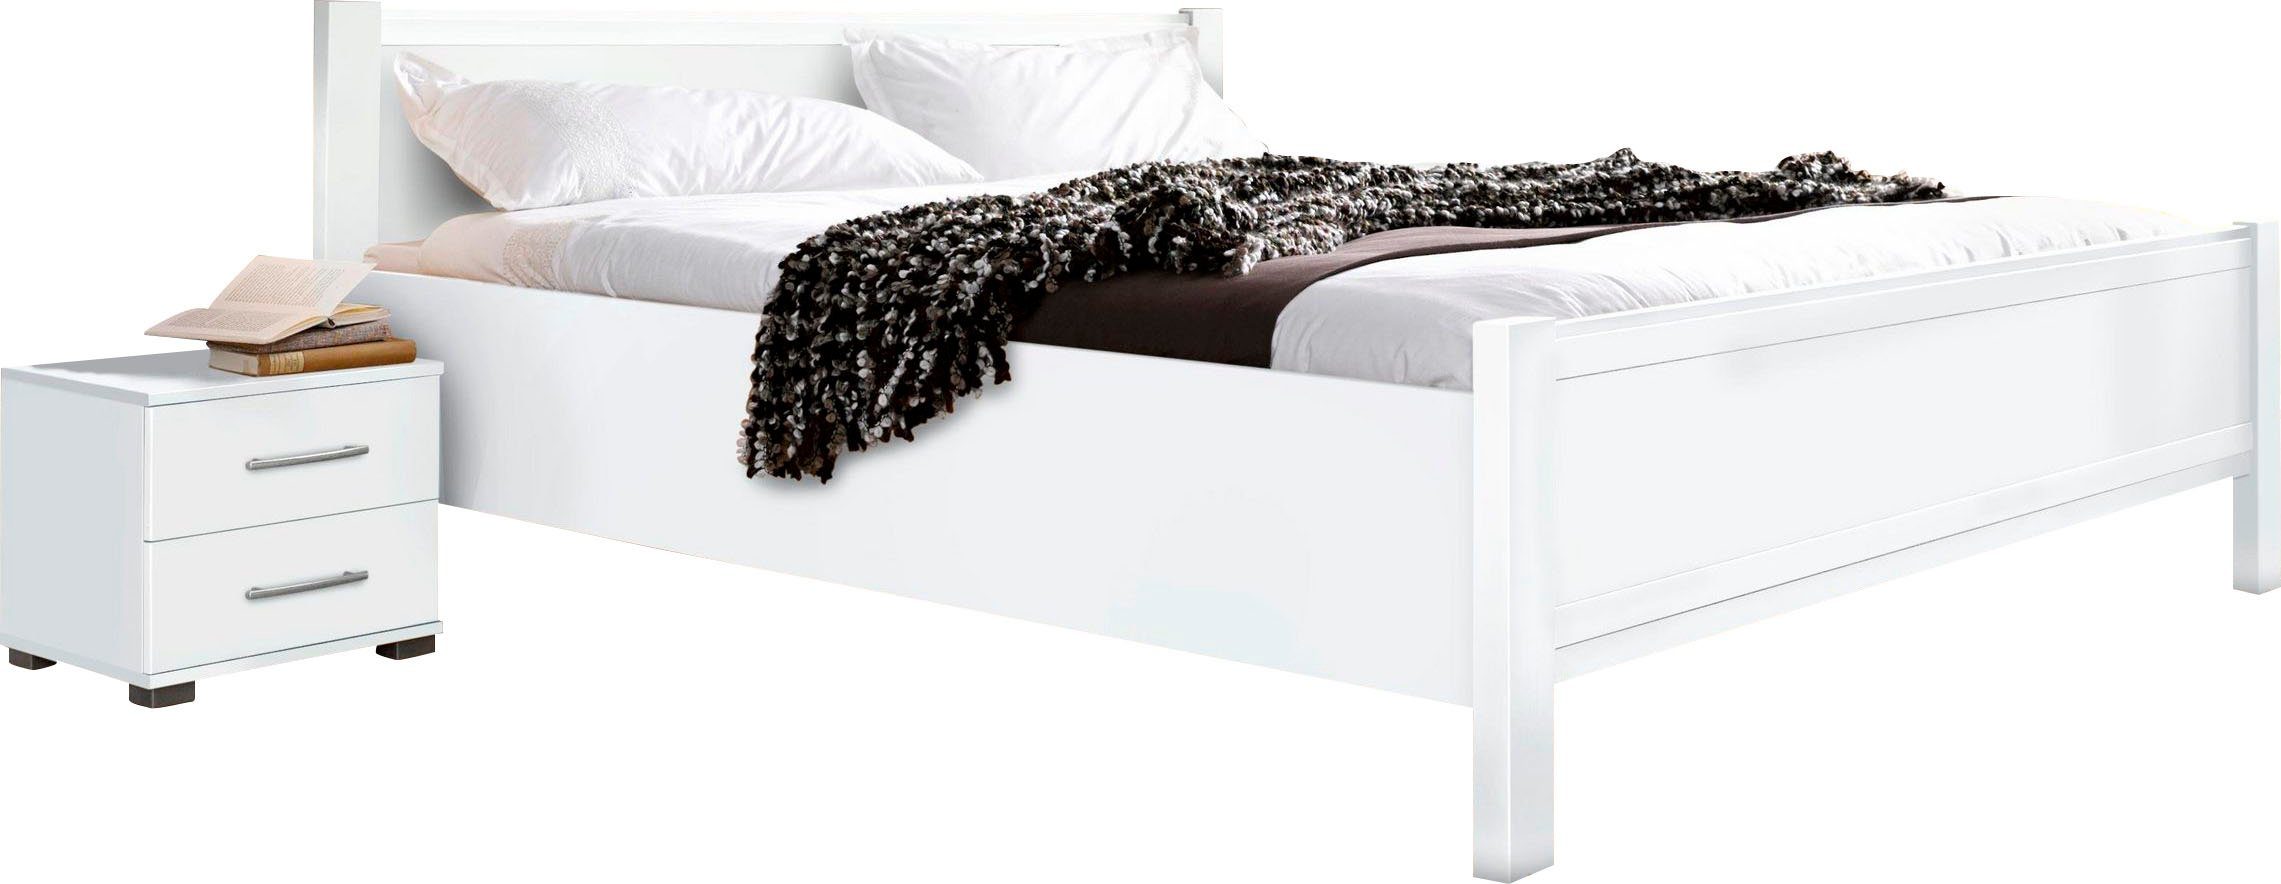 priess Bett Husum Schlafzimmer Jugendzimmer Seniorenbett für Motorrahmen geeignet, mit Komforthöhe verschiedene Ausführungen hochwertige Premium Qualität